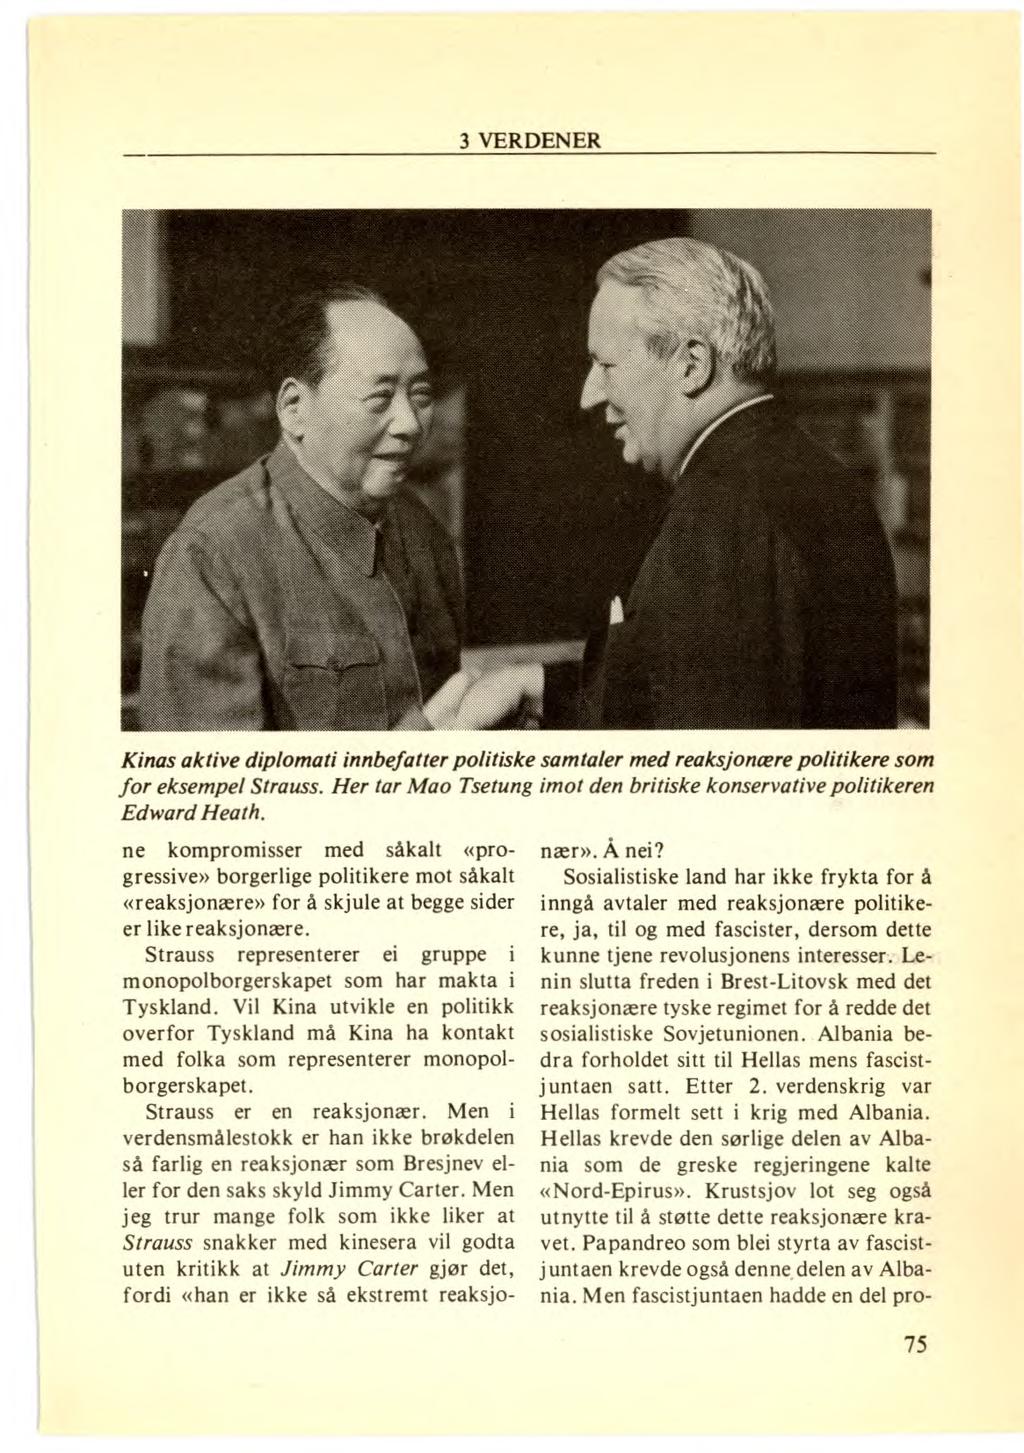 Kinas aktive diplomati innbefatter politiske samtaler med reaksjonære politikere som for eksempel Strauss. Her tar Mao Tsetung imot den britiske konservative politikeren Edward Heath.